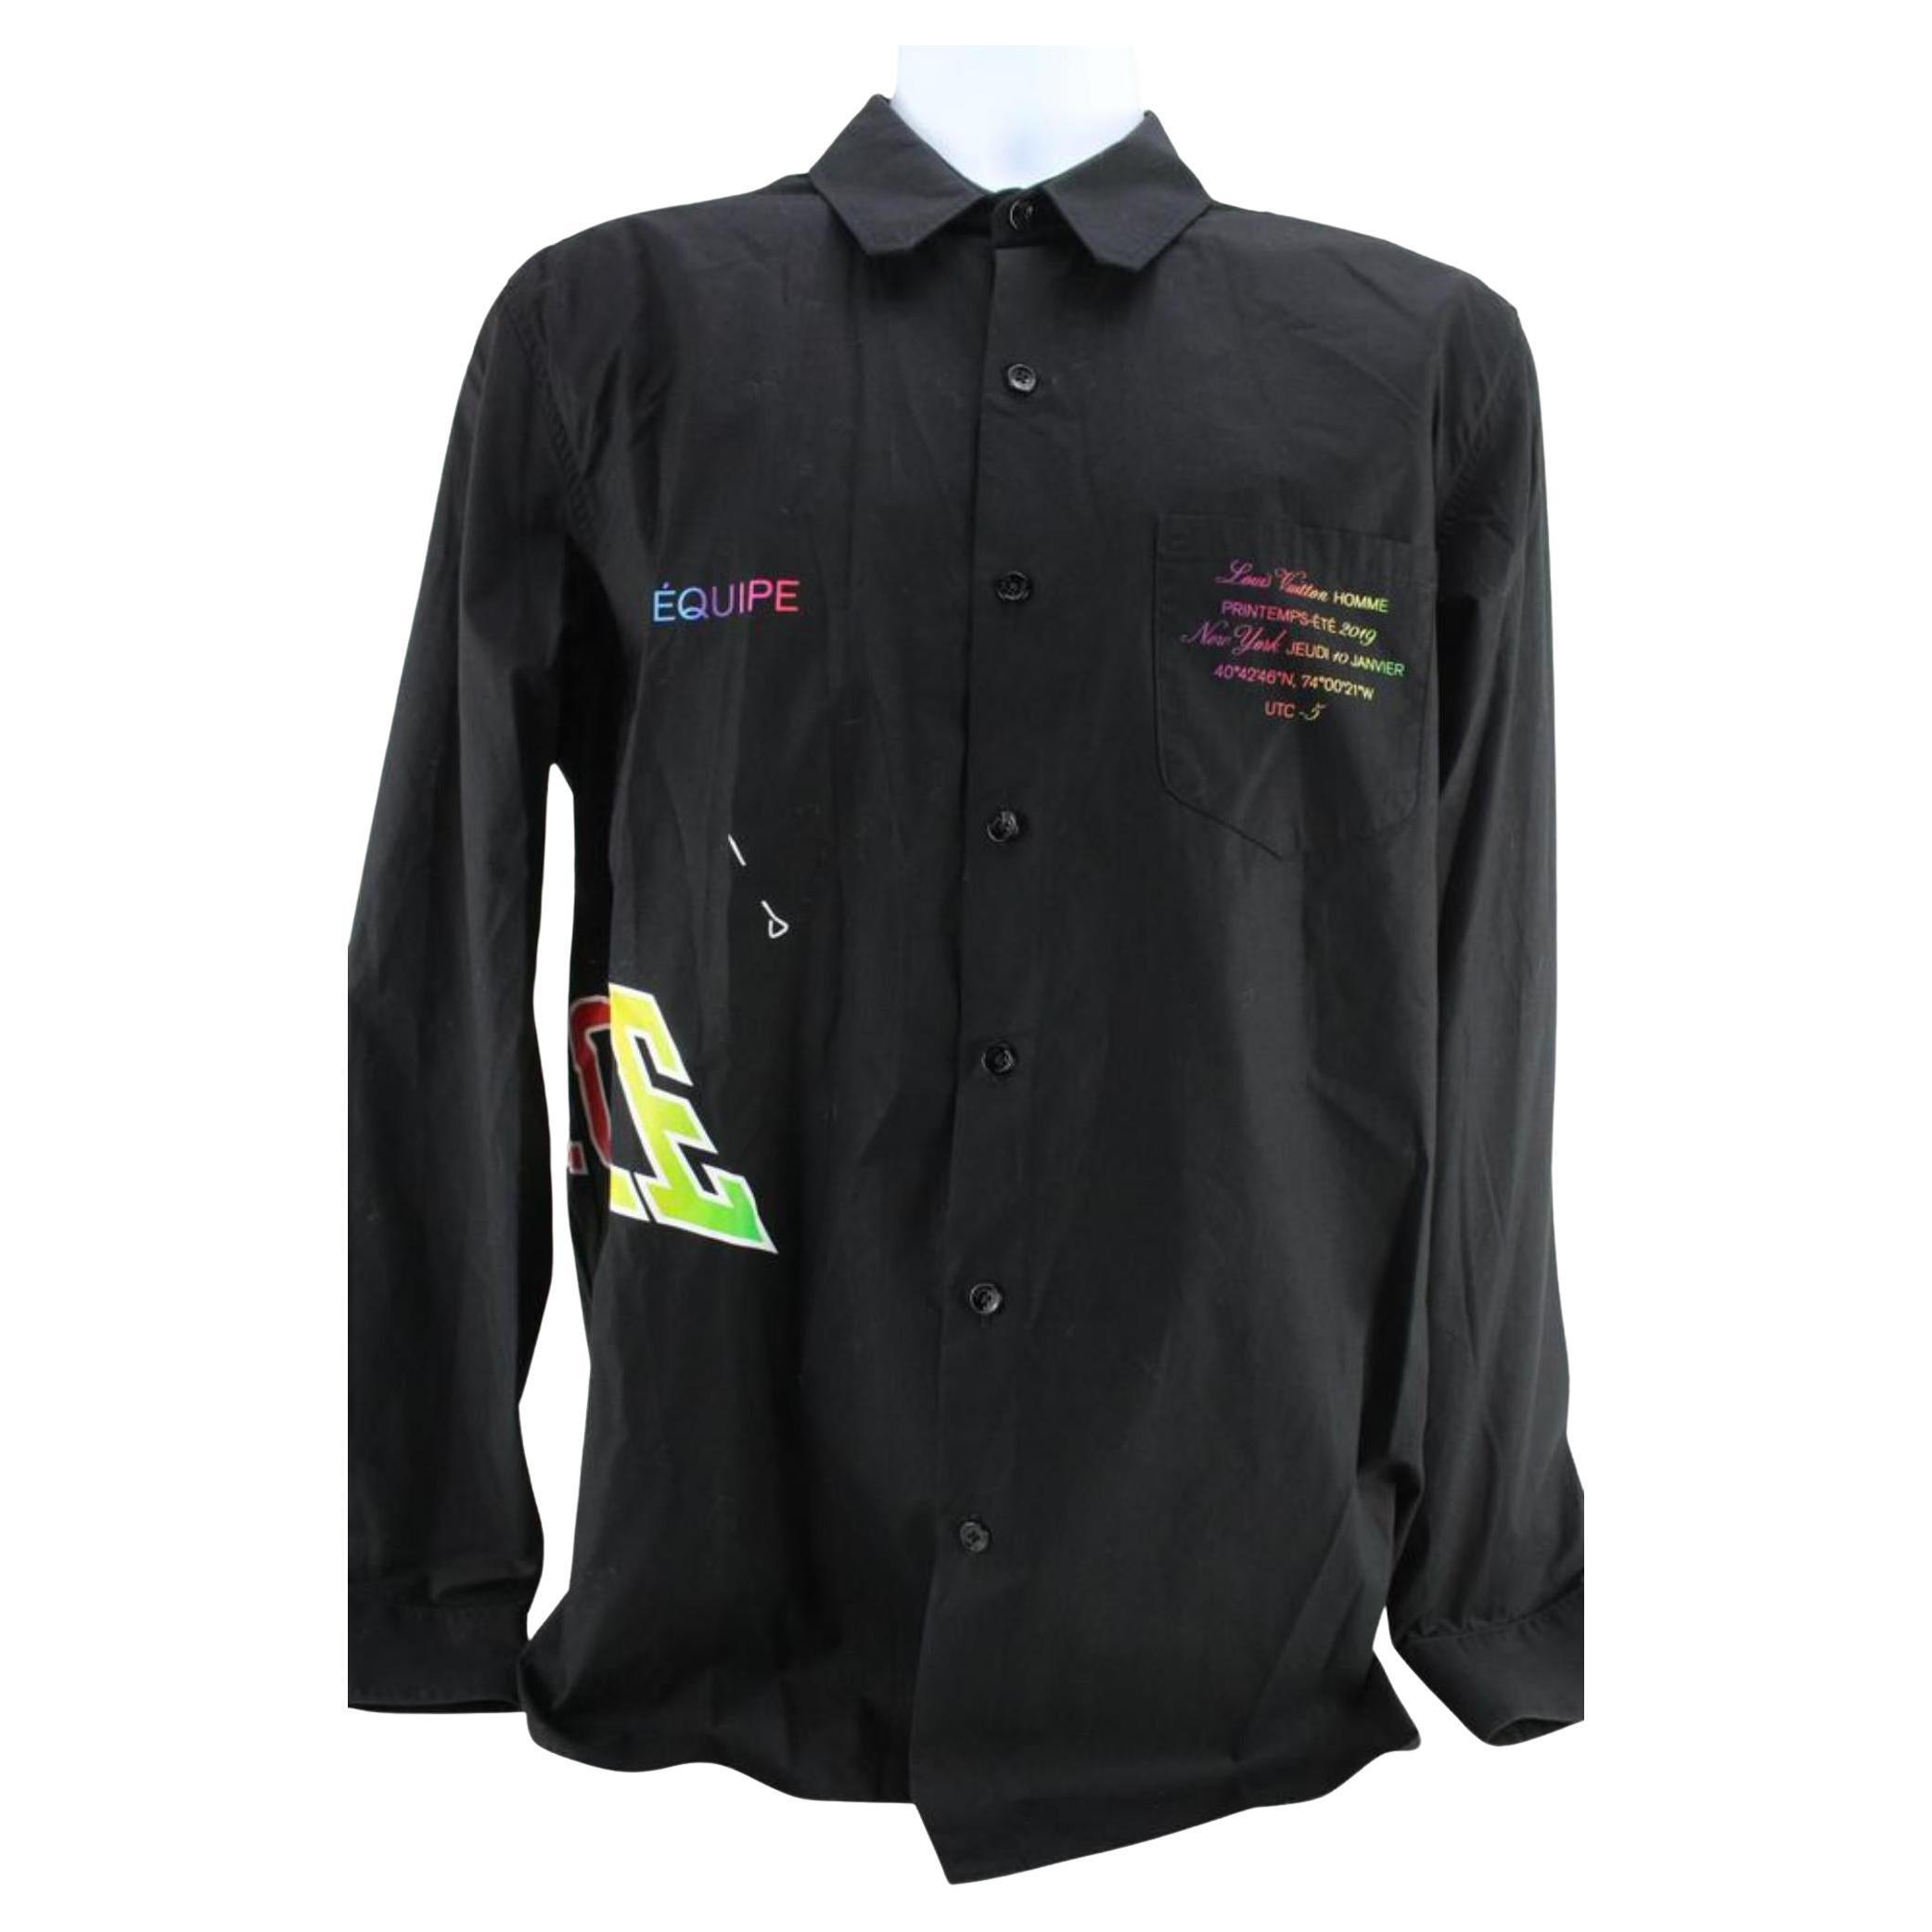 Louis Vuitton SS20 equipe uniform button up shirt